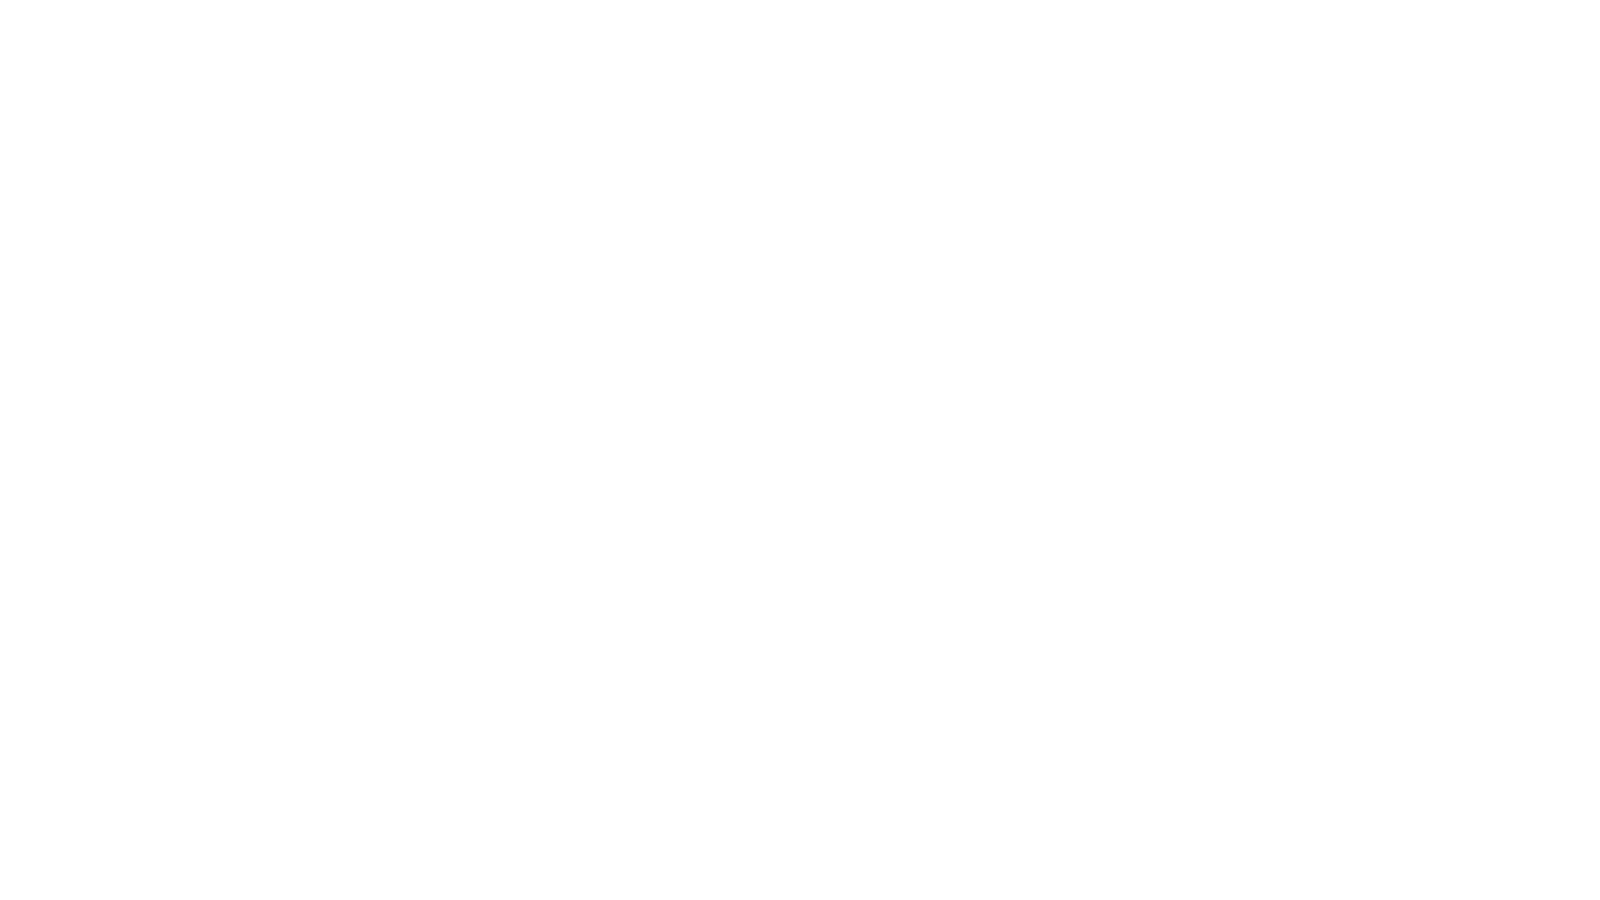 La Flûte à six schtroumpfs (traducida al español como La flauta de seis pitufos o como La flauta de los pitufos) es la decimosexta historieta de la serie Johan y Pirluit de Peyo y la primera en la que aparecen los pitufos. 

La historieta dio lugar a una película franco-belga de dibujos animados dirigida por Eddie Lateste y Peyo, estrenada en Francia el 16 de diciembre de 1976. Se tituló Los pitufos y la flauta mágica en Hispanoamérica y La flauta de los pitufos en España.